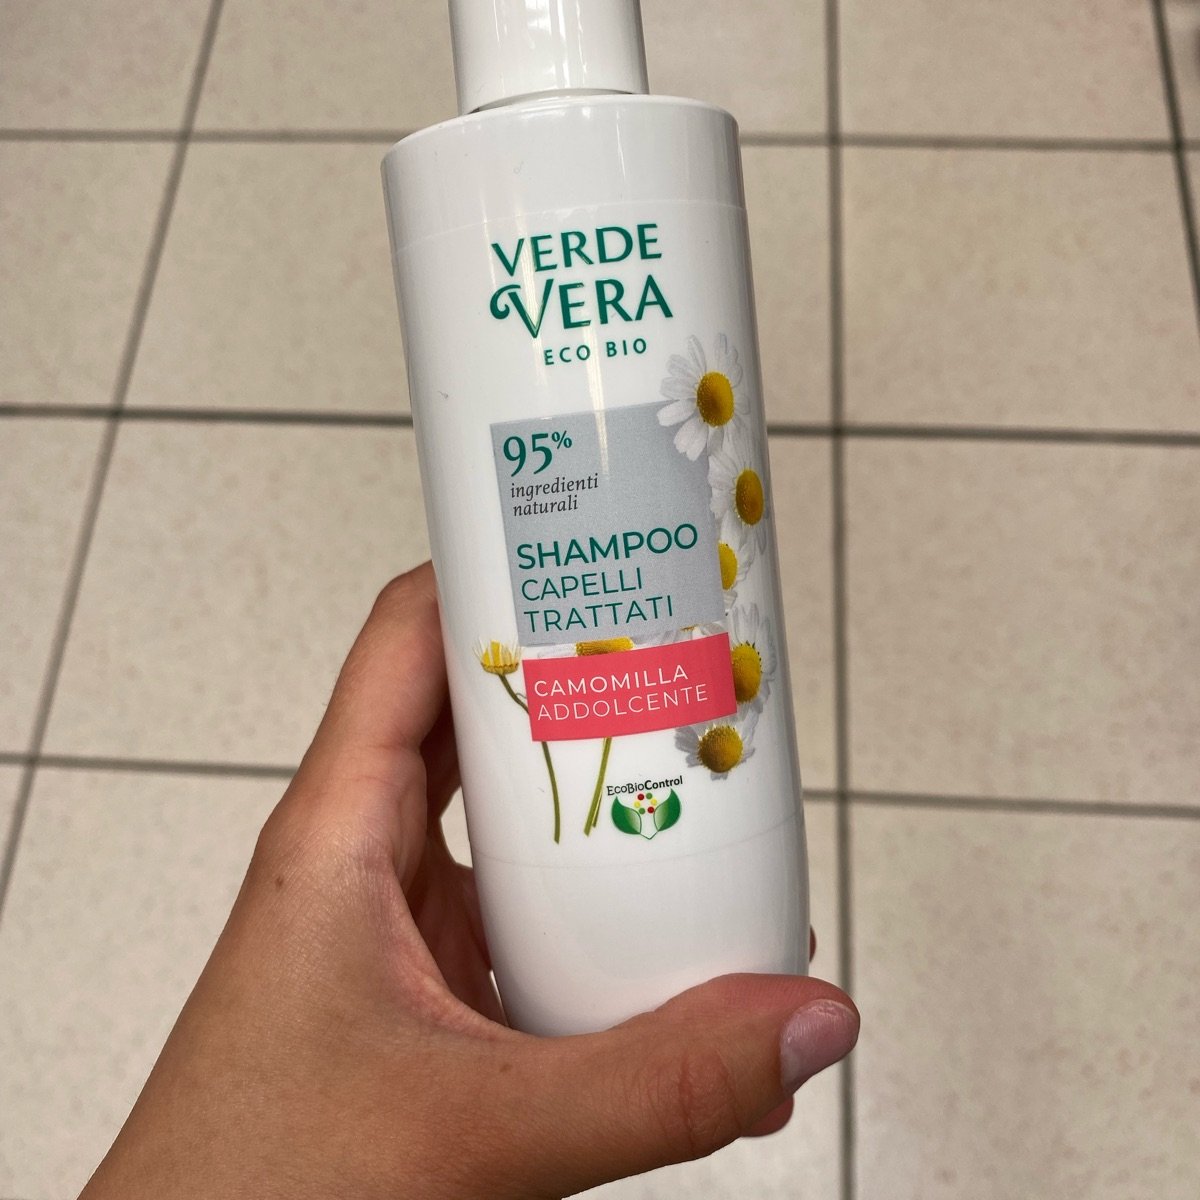 Verde Vera Eco Bio shampoo alla camomilla Reviews | abillion